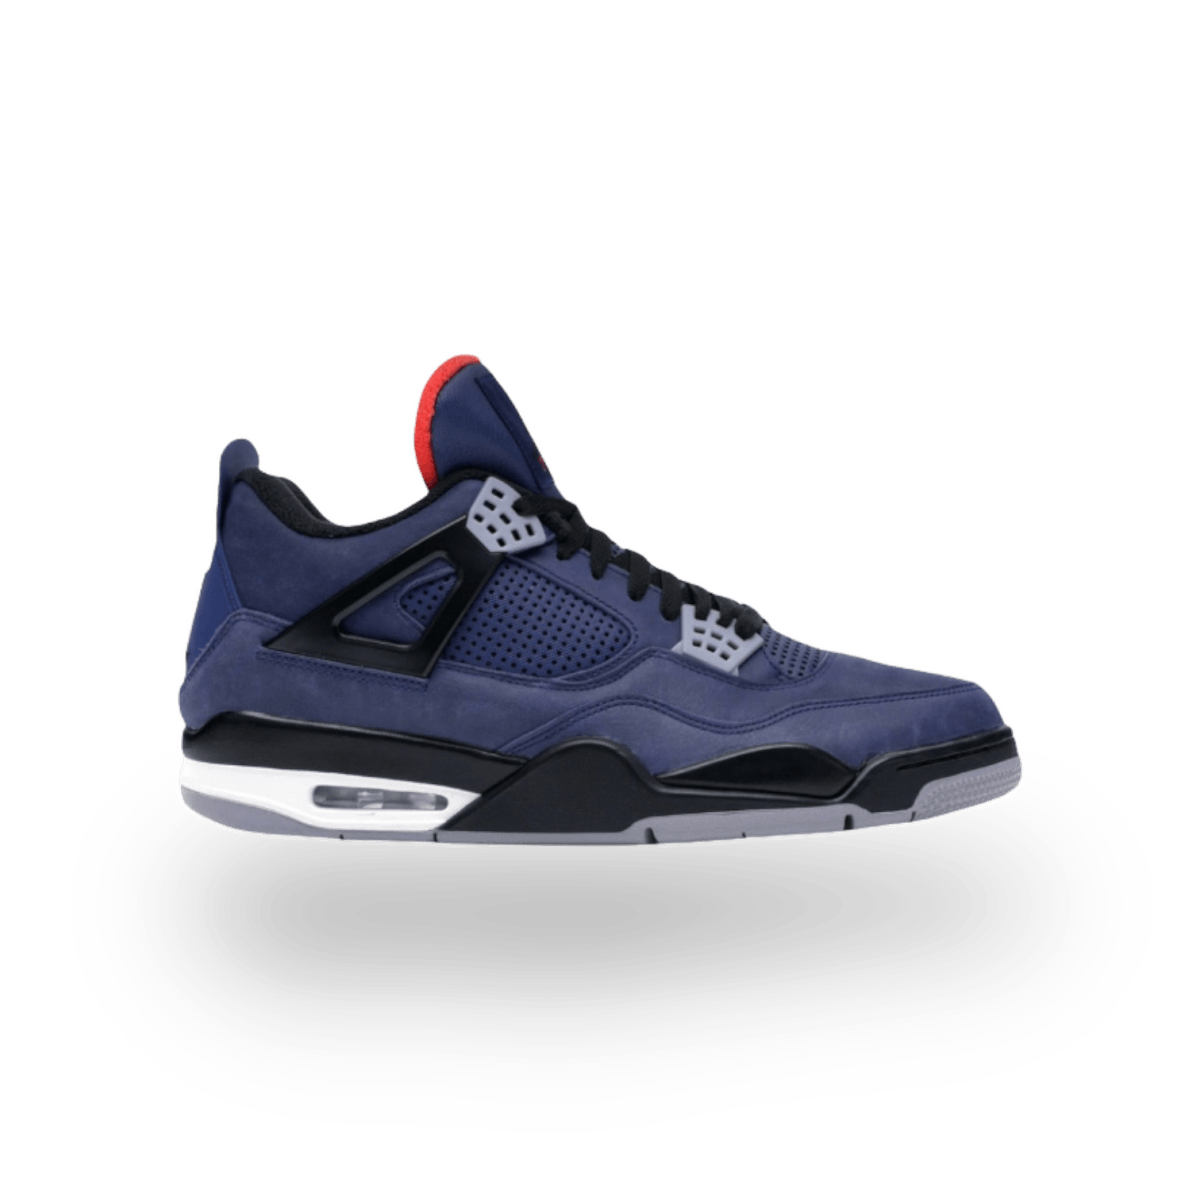 Jordan 4 Retro Winterized Loyal Blue - Mid Sneaker - Jawns on Fire Sneakers & Streetwear